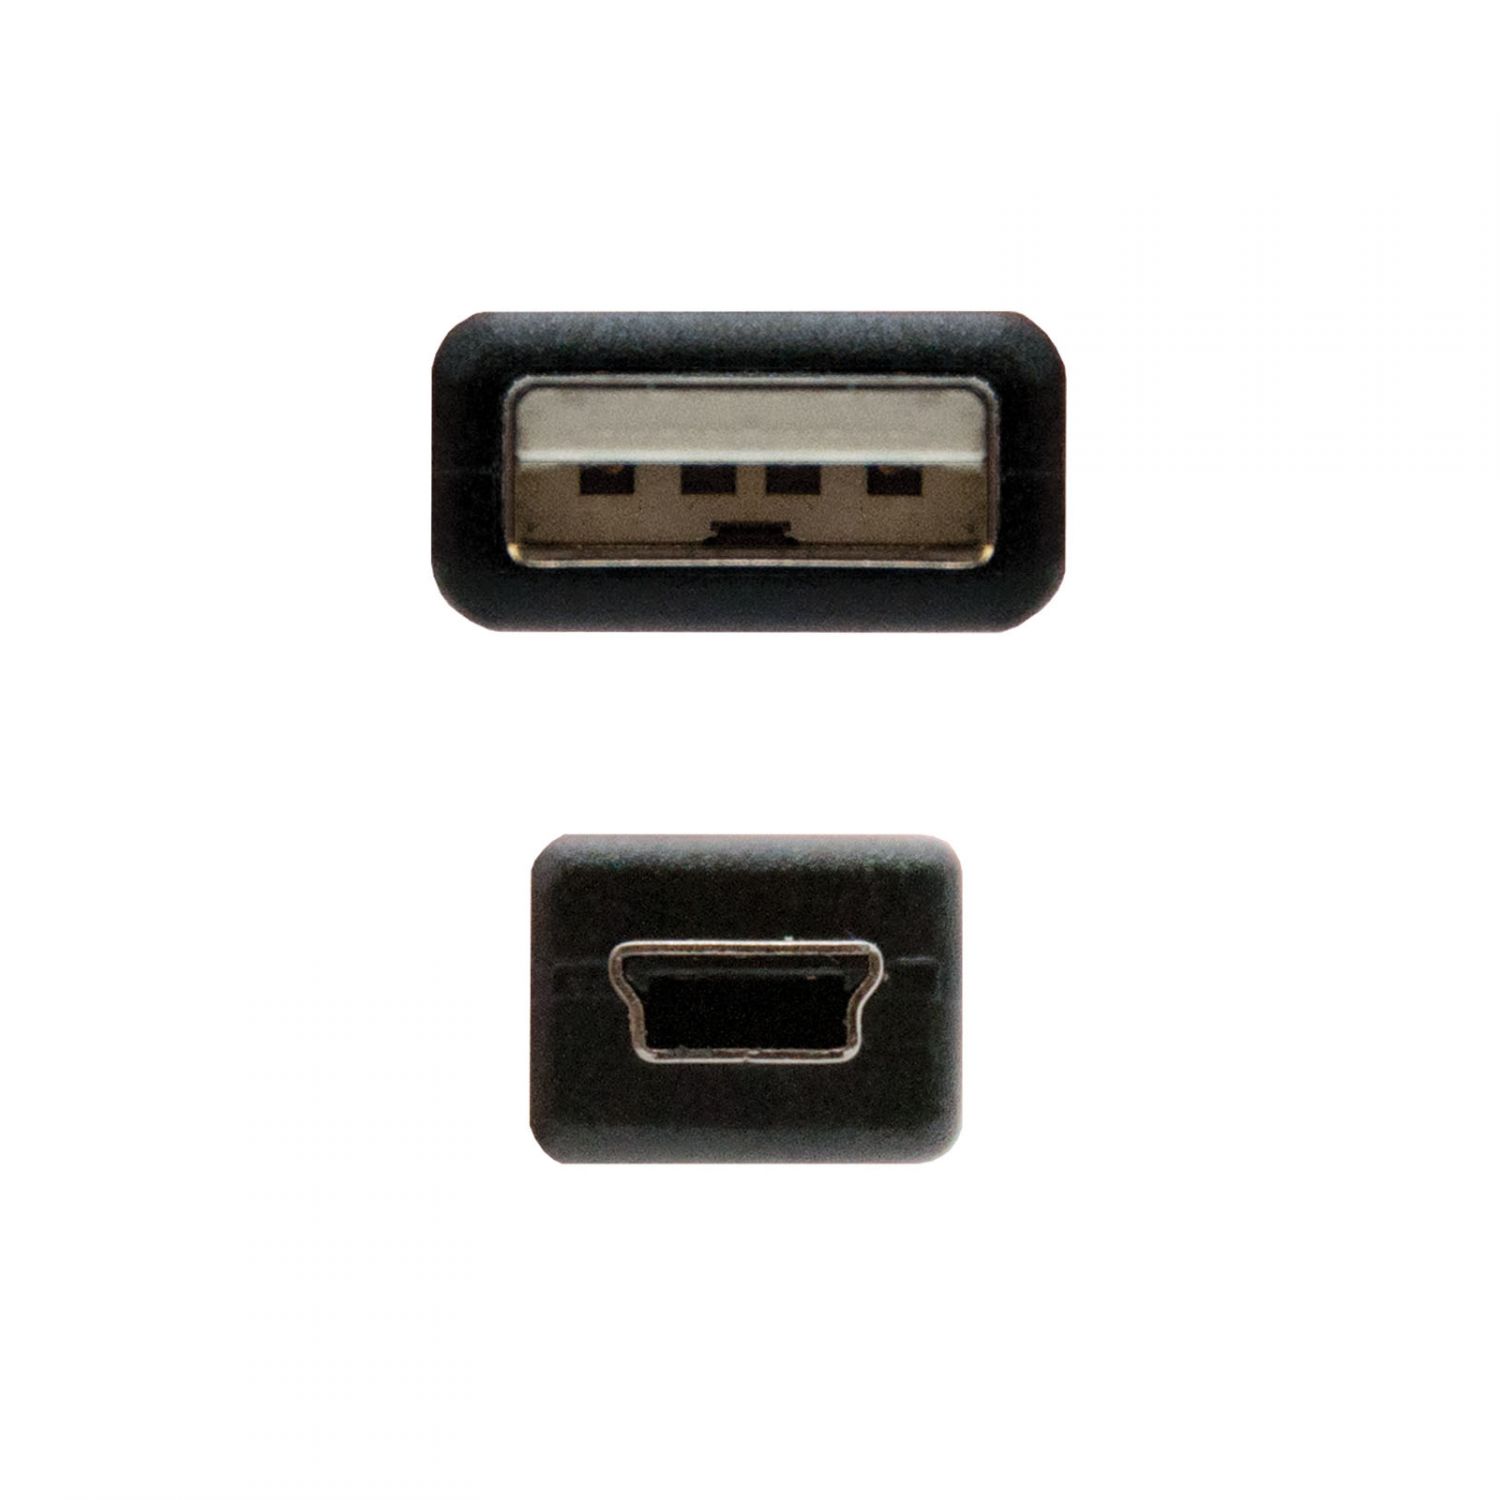 10.01.0405 - Nanocable USB-A/M a Mini USB-M 4.5m Negro (10.01.0405)